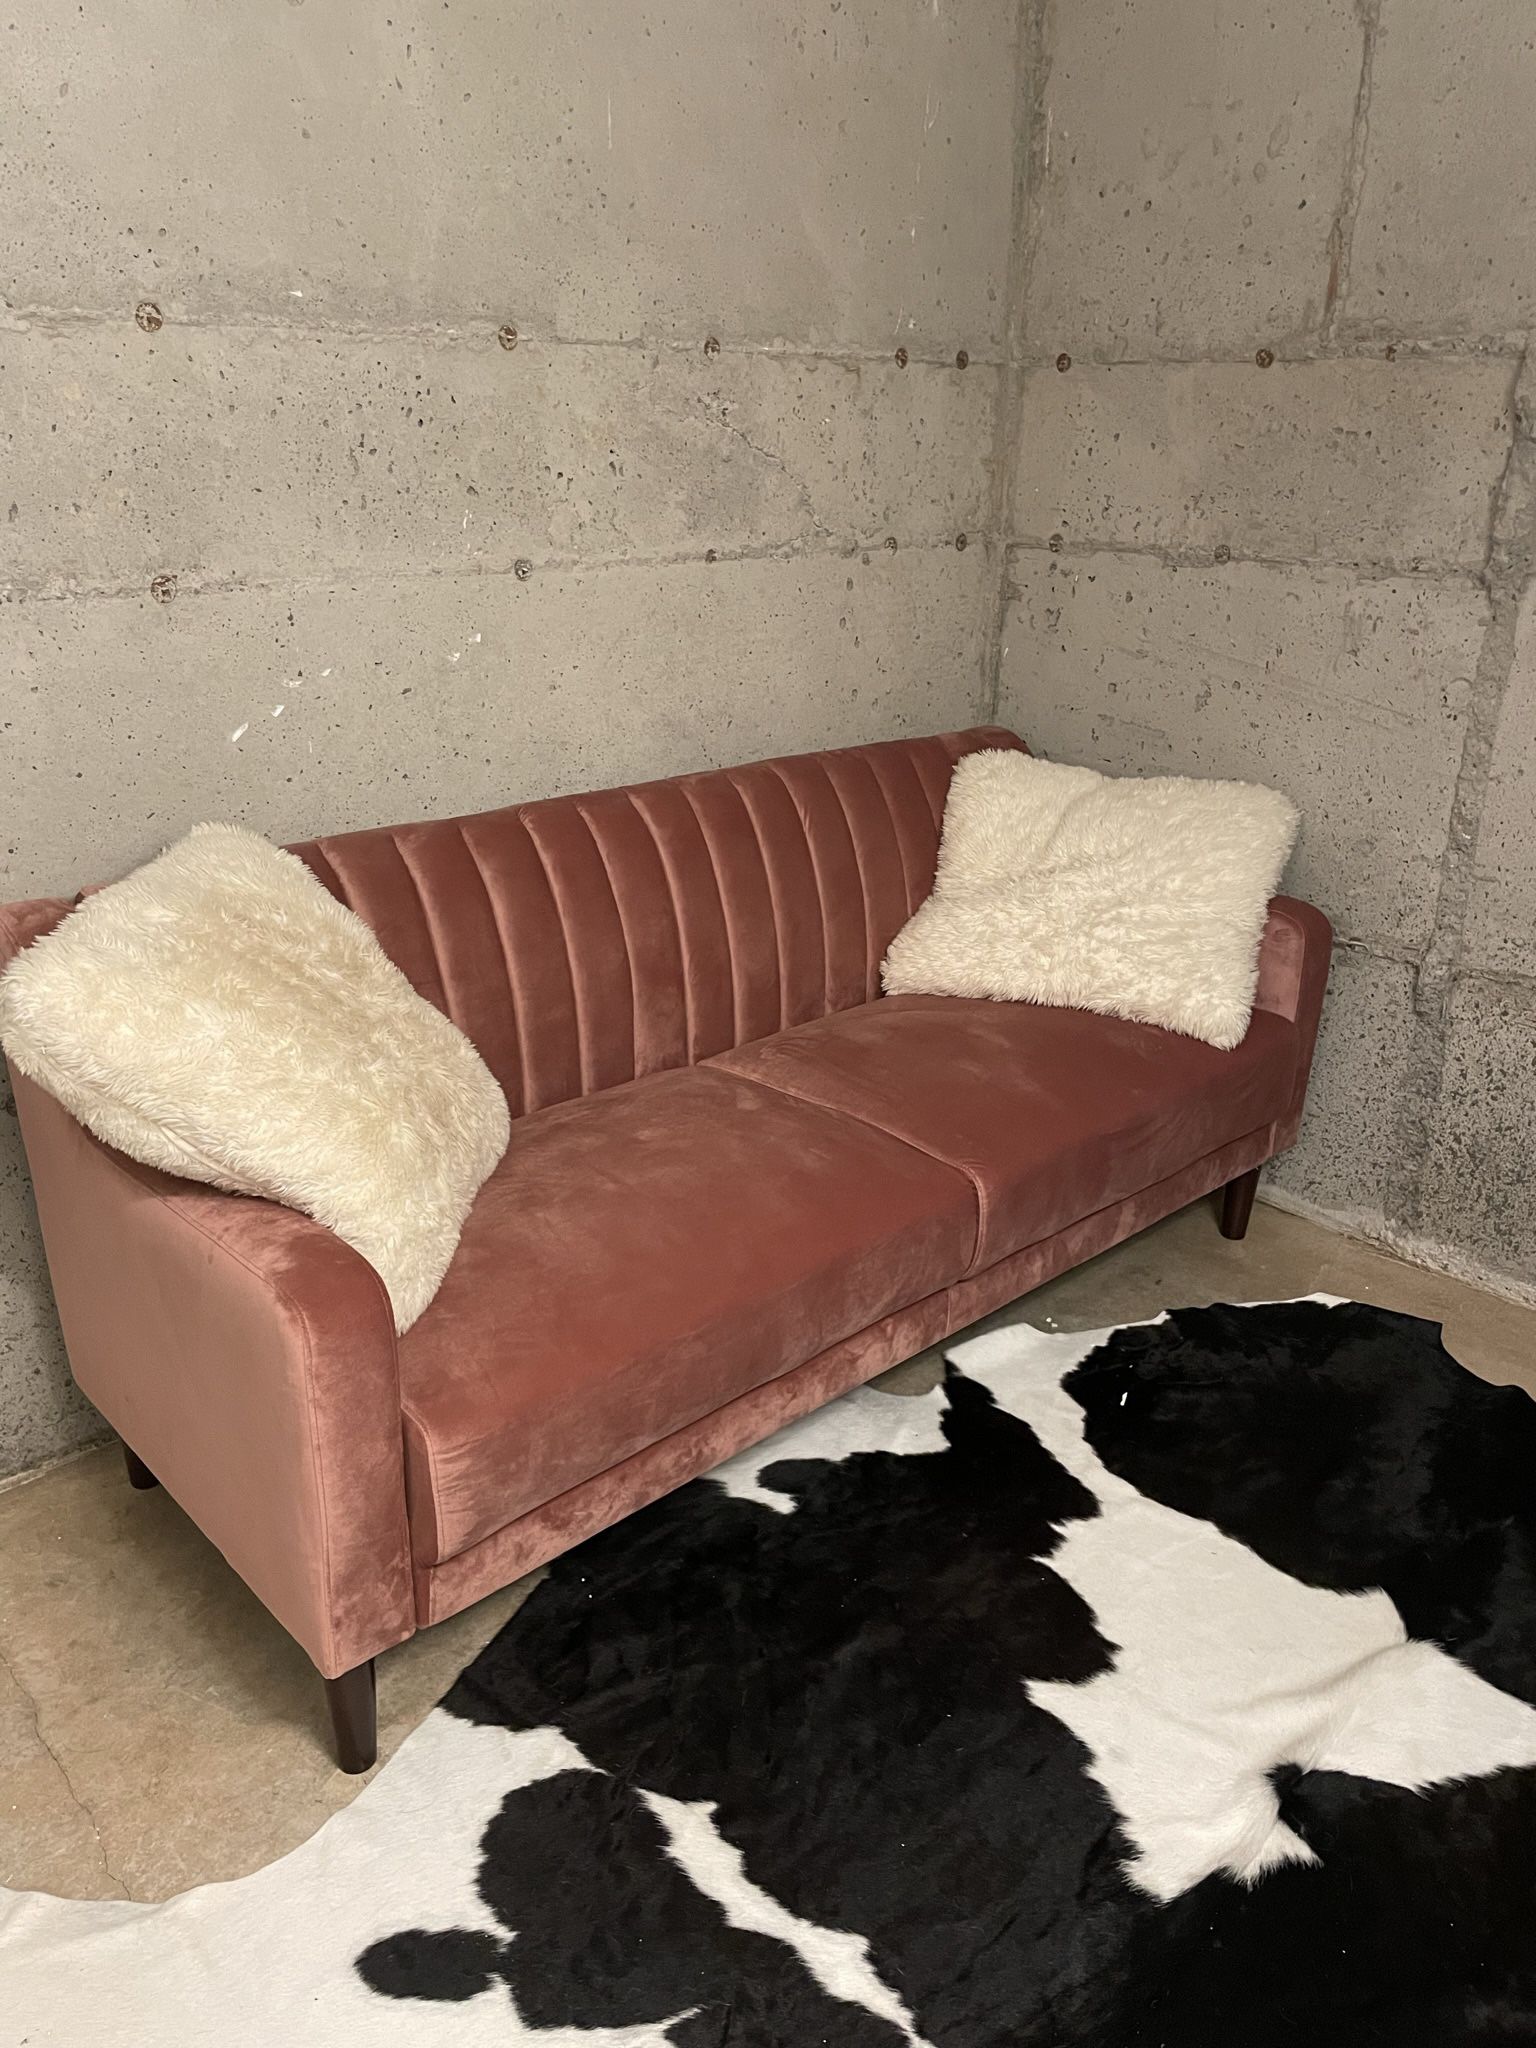 Pink Velvet Loveseat Sofa